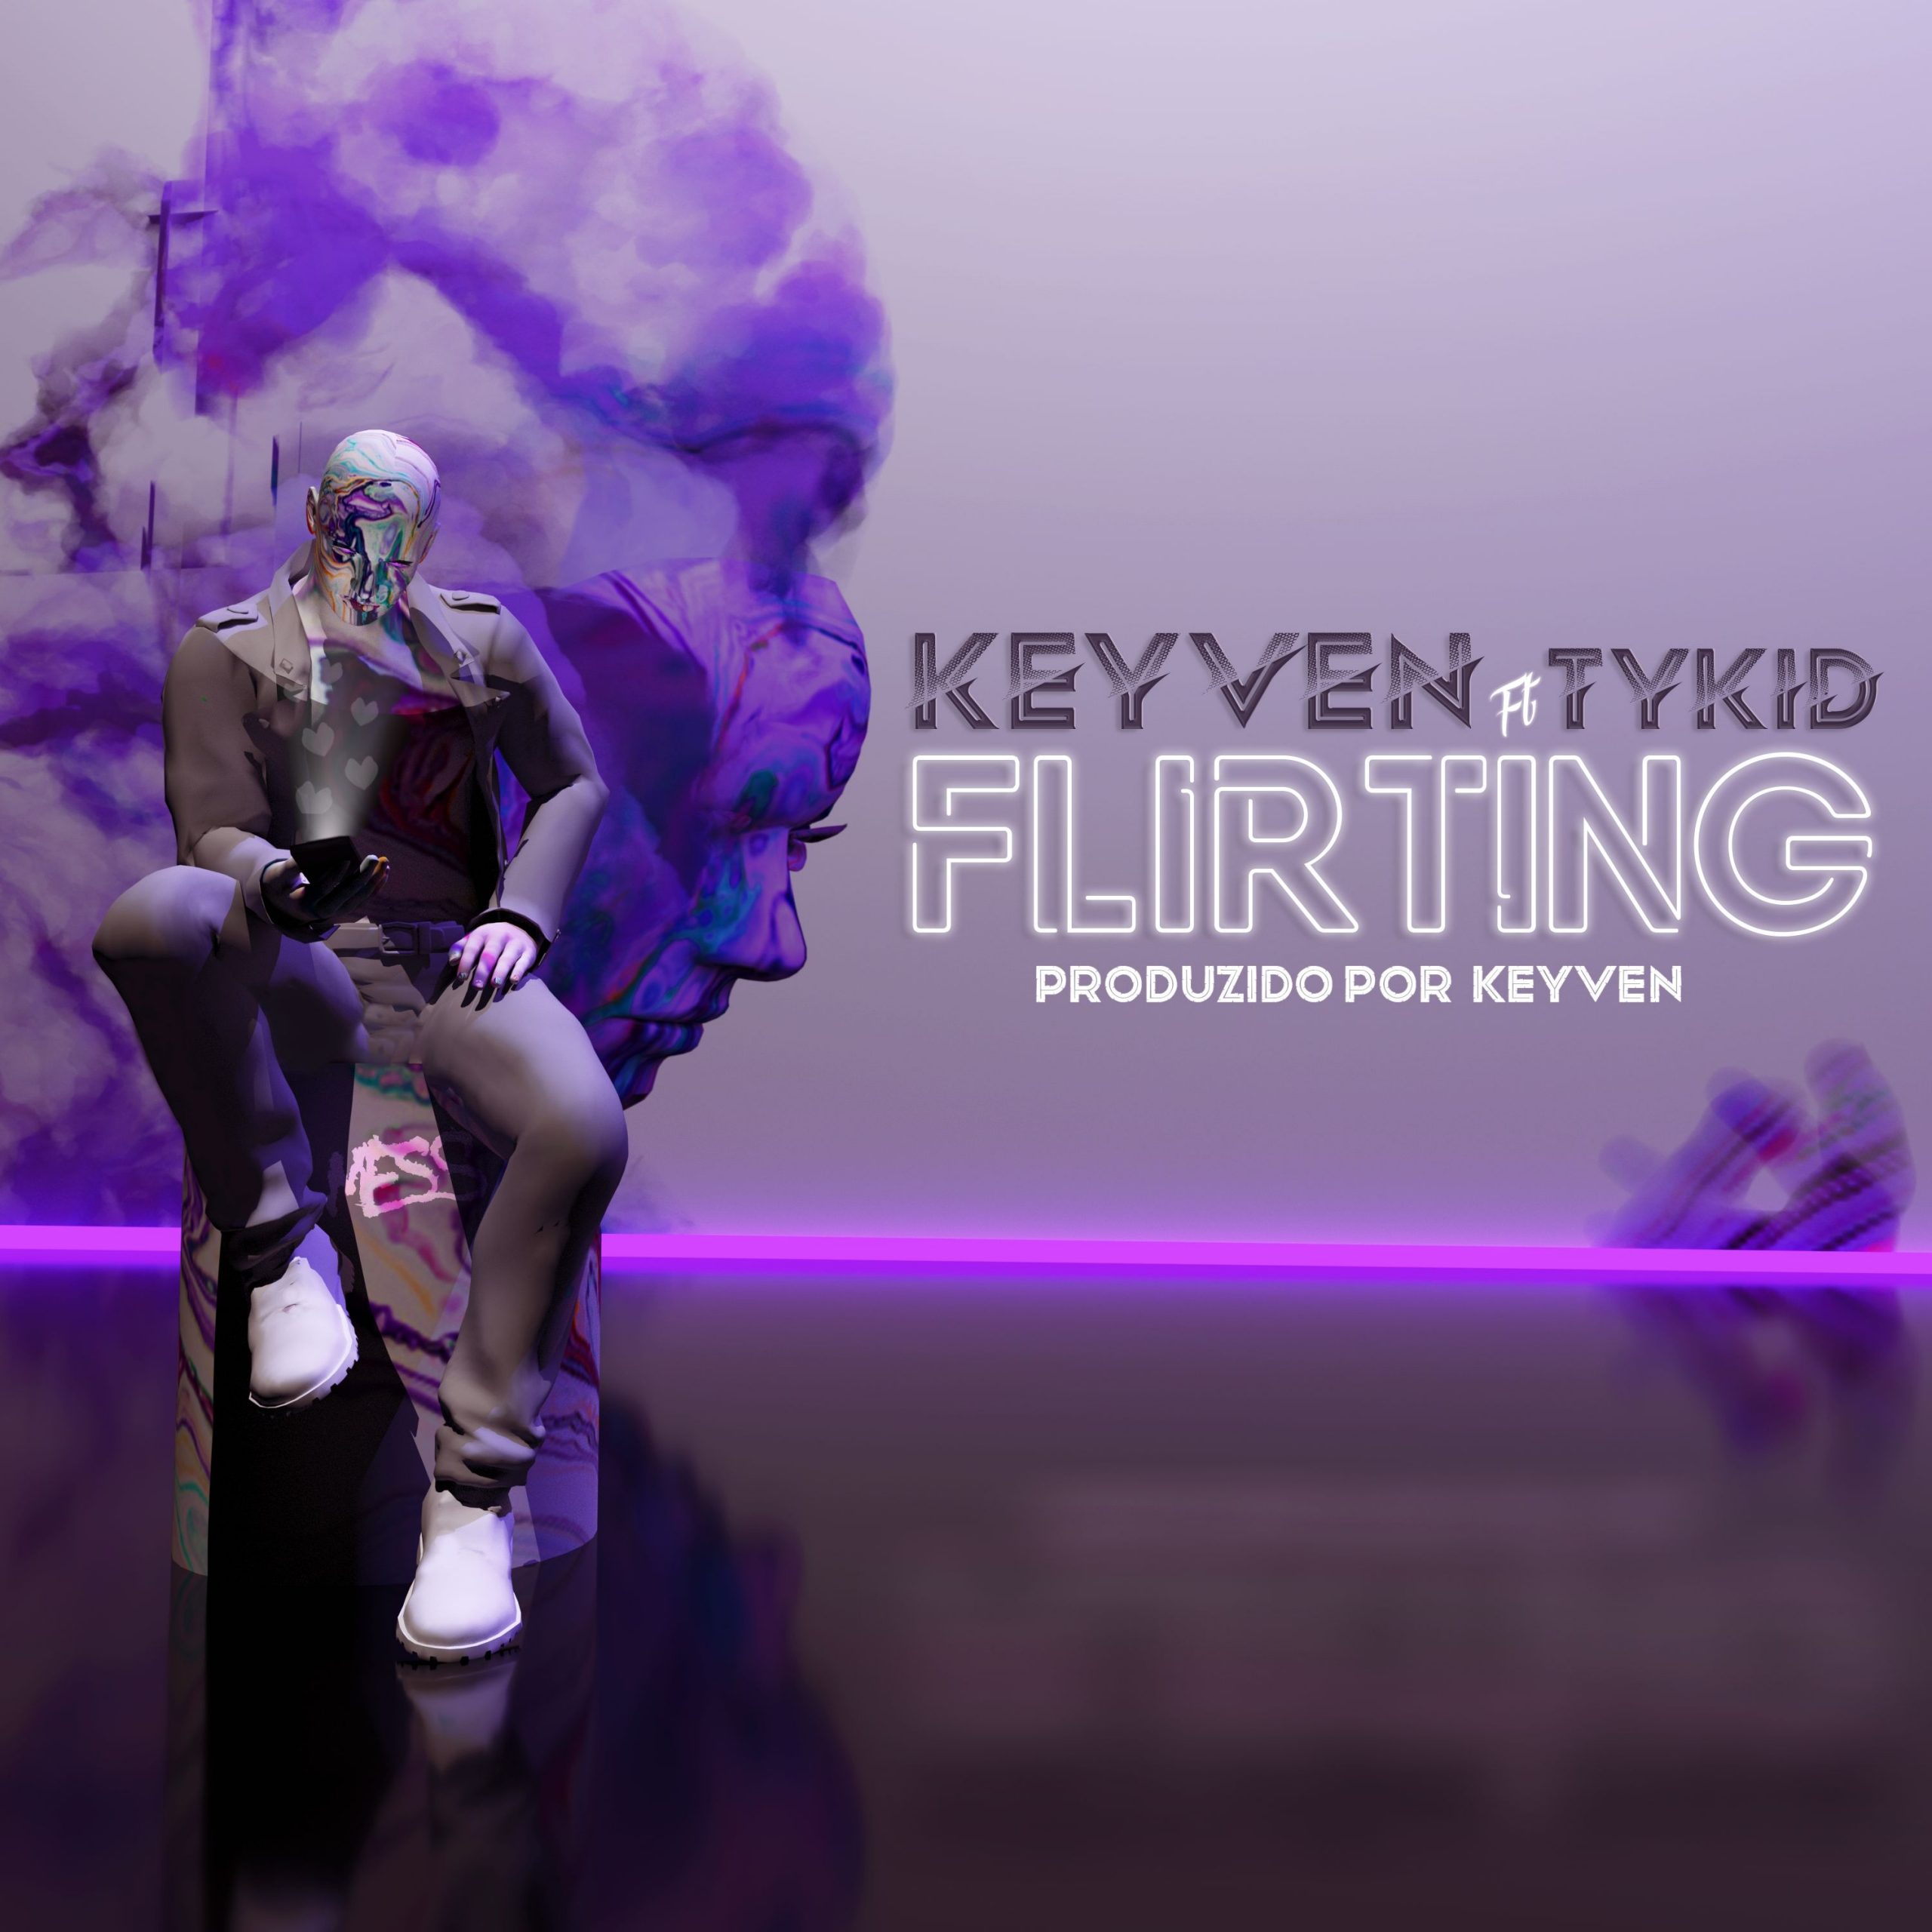 Keyven - Flirting (feat. Tykid)